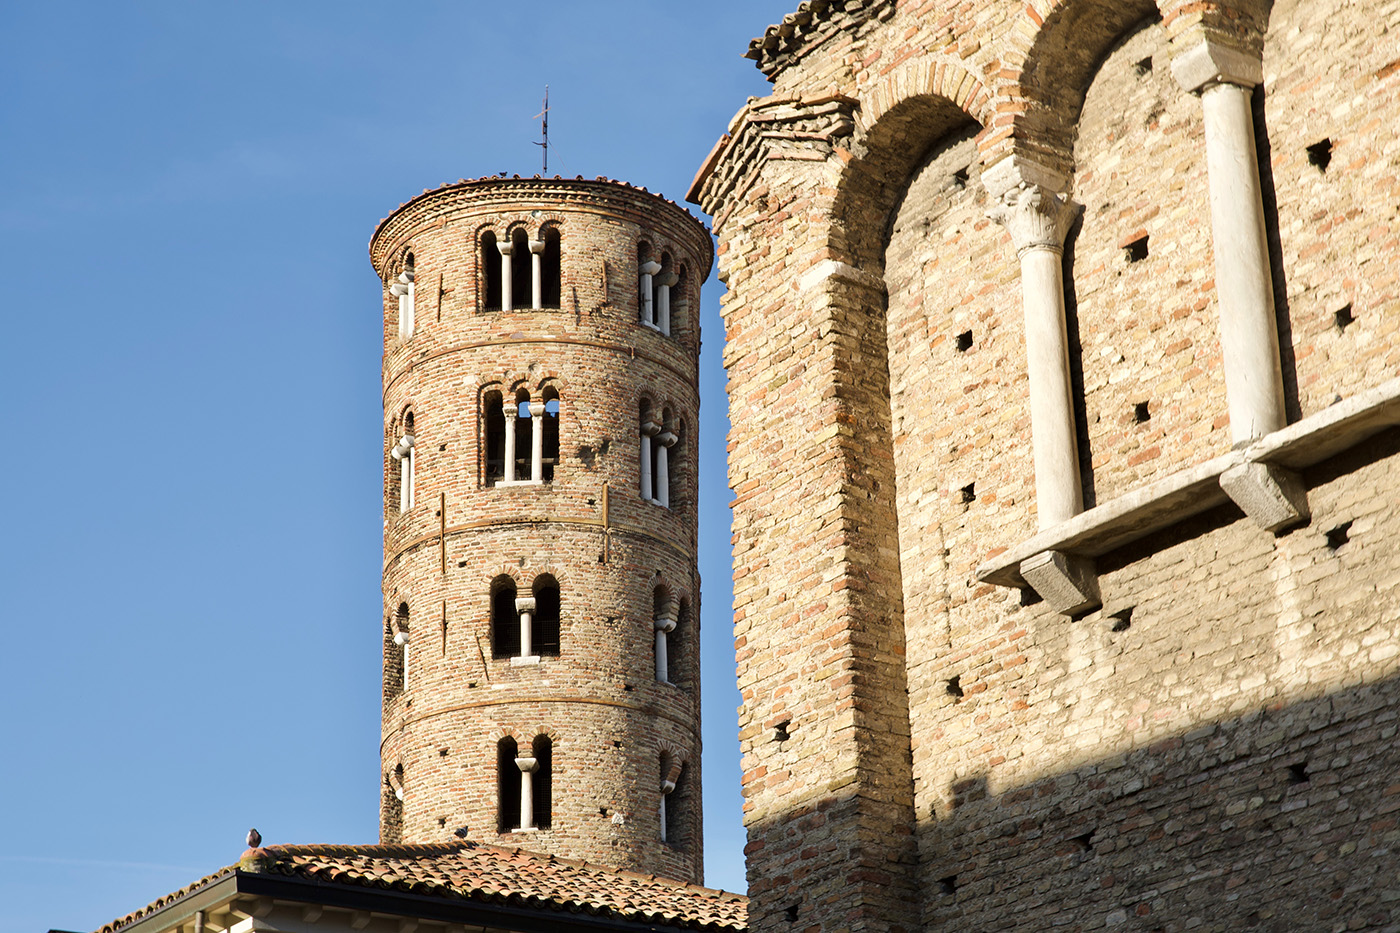 Il campanile di Sant'Apollinare nuovo, uno dei molti campanili circolari di Ravenna